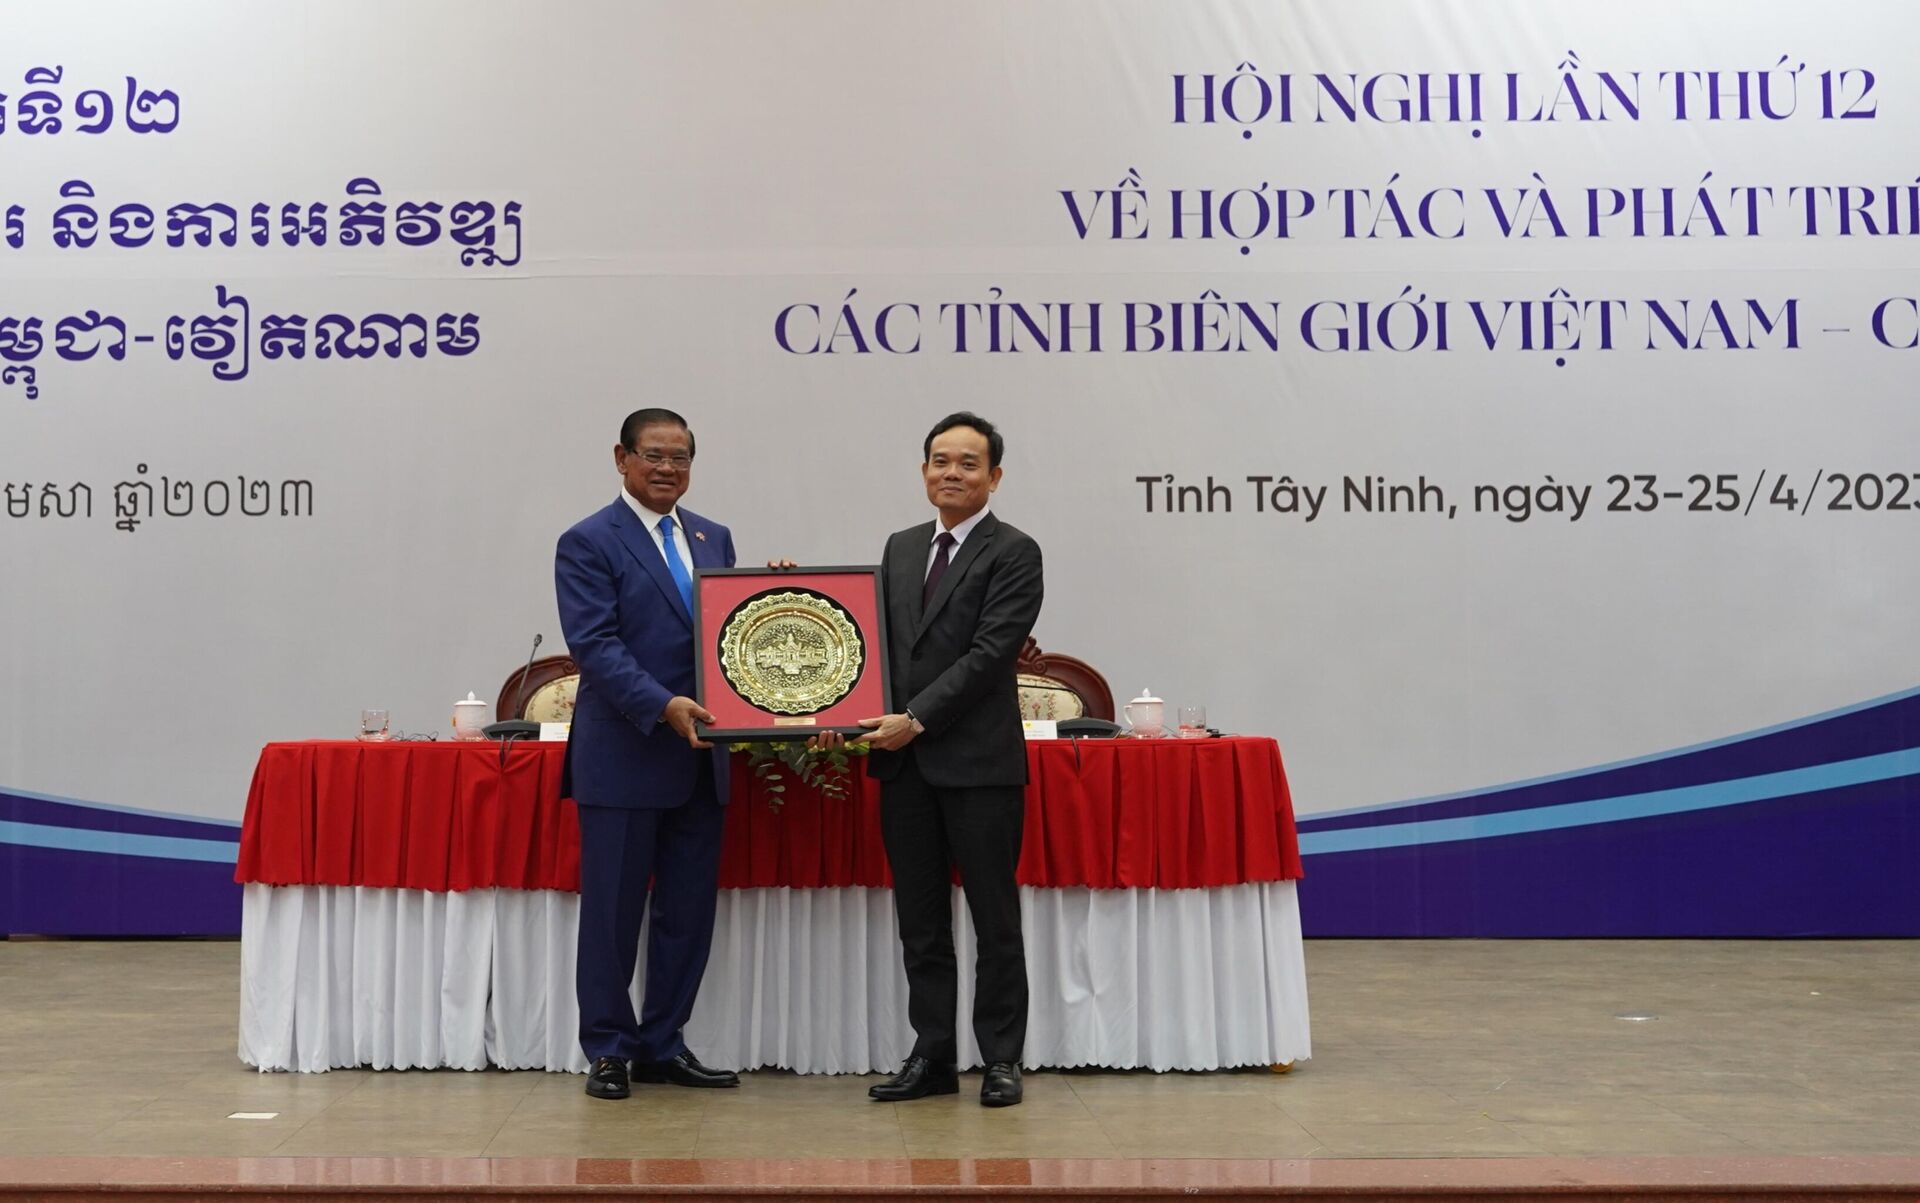 Hội nghị Hợp tác và phát triển các tỉnh biên giới Việt Nam - Campuchia lần thứ 12  - Sputnik Việt Nam, 1920, 25.04.2023